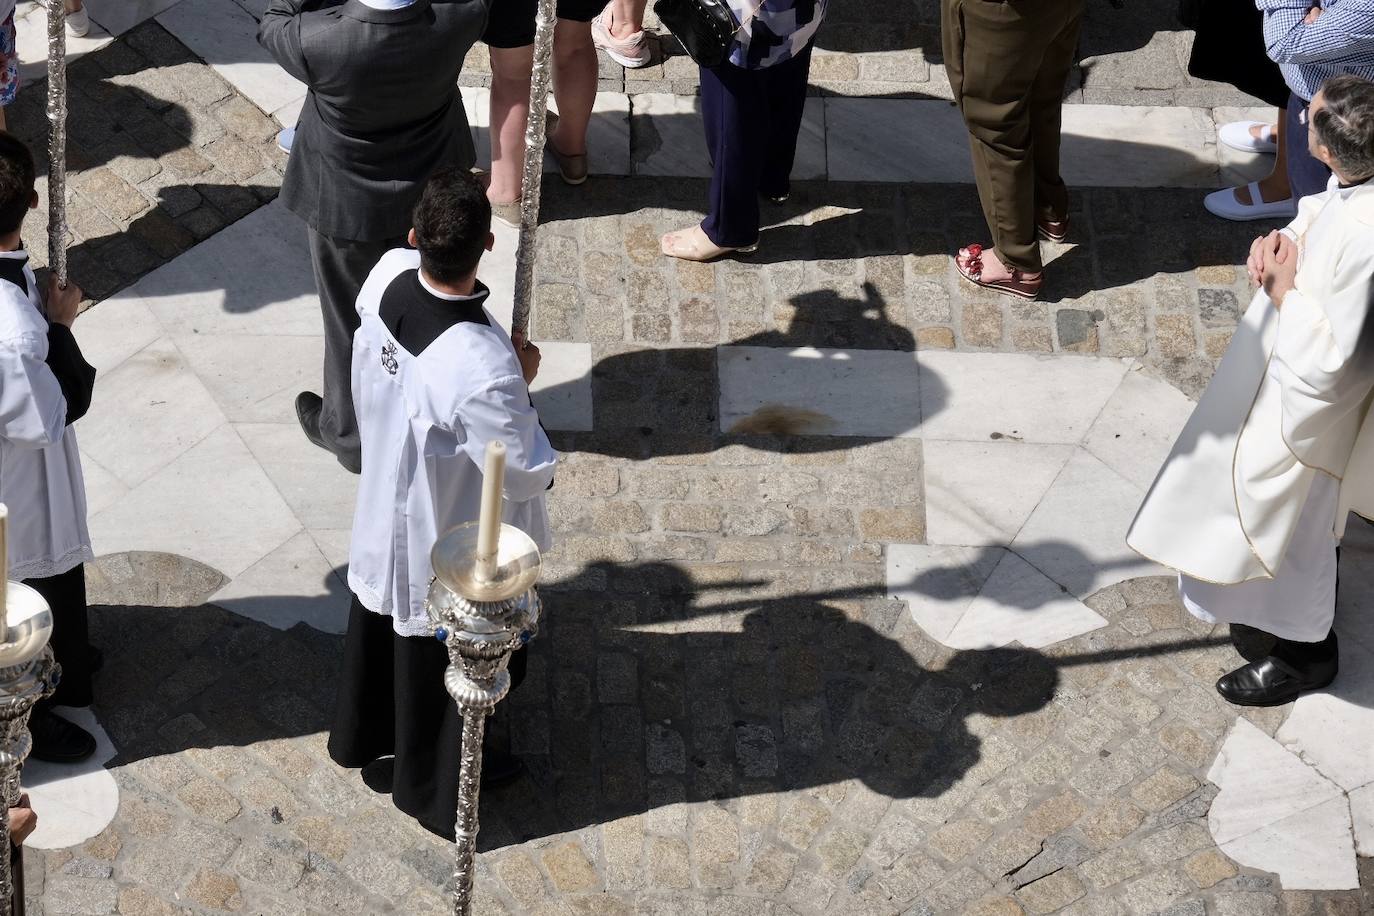 La procesión del Corpus Christi de Cádiz, en imágenes